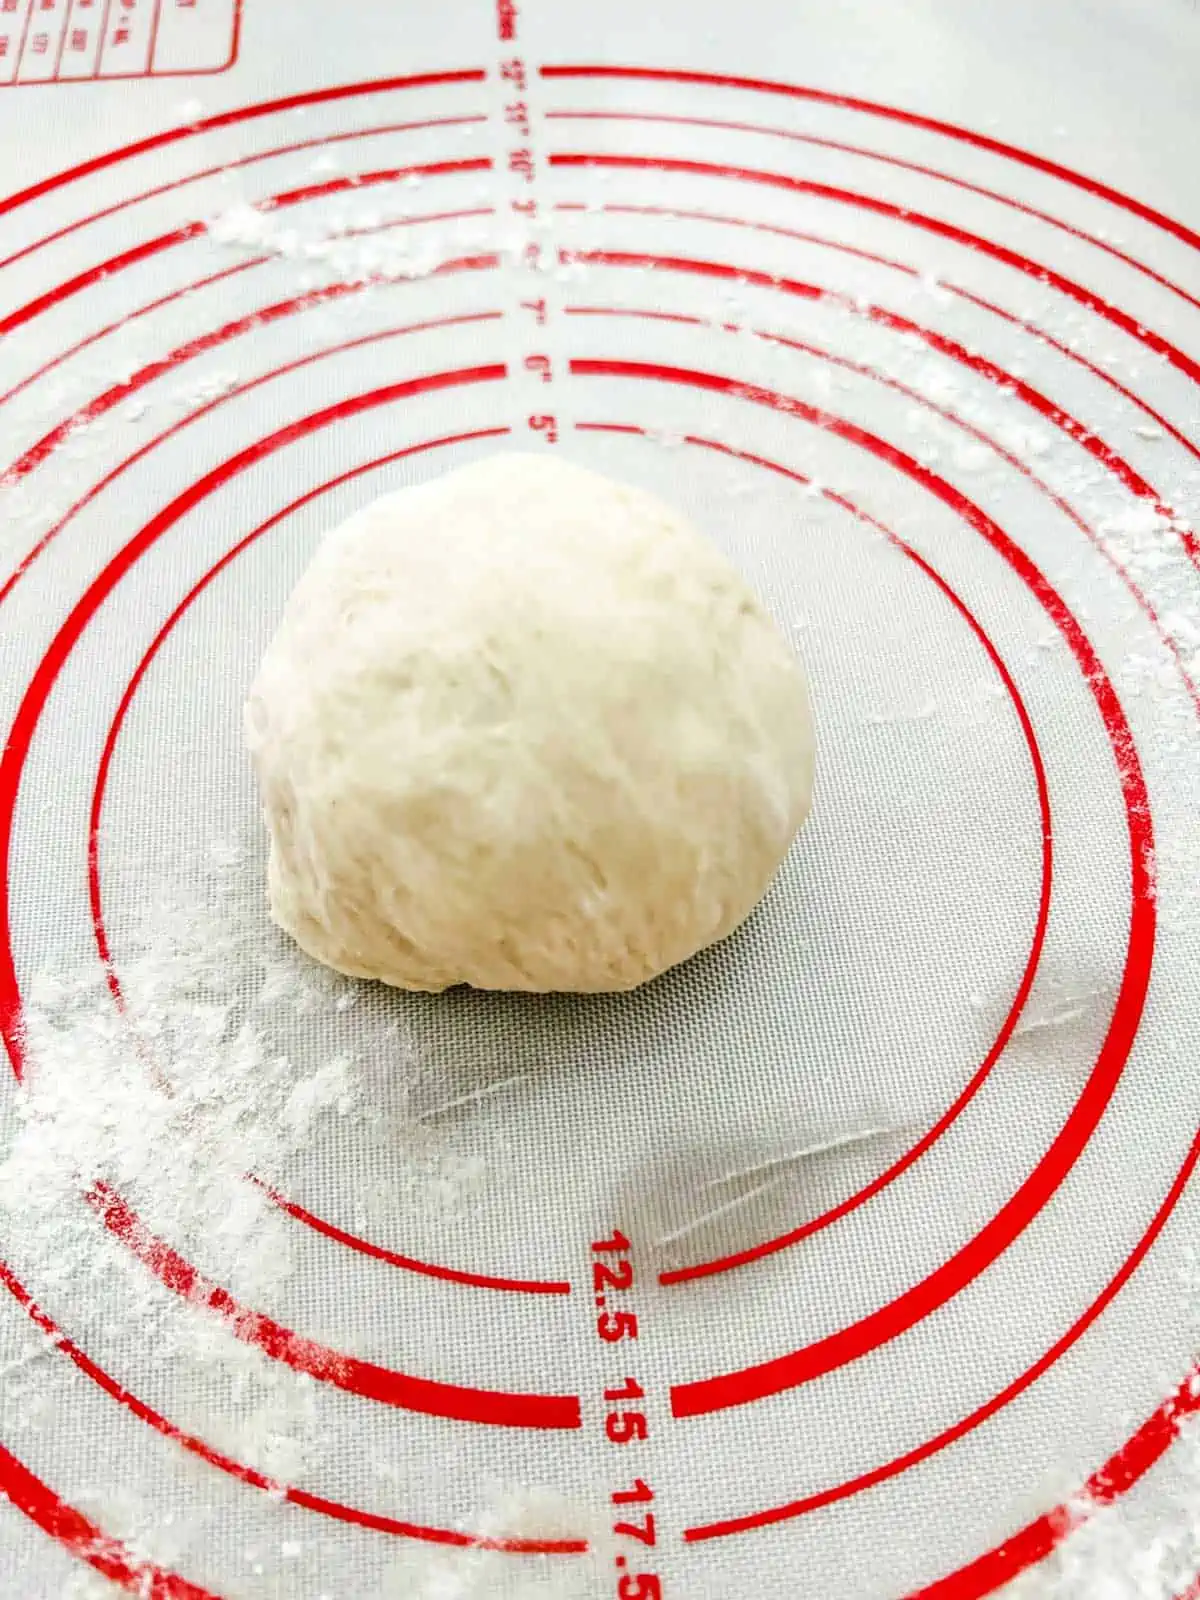 Photo of a ball of burger bun dough.